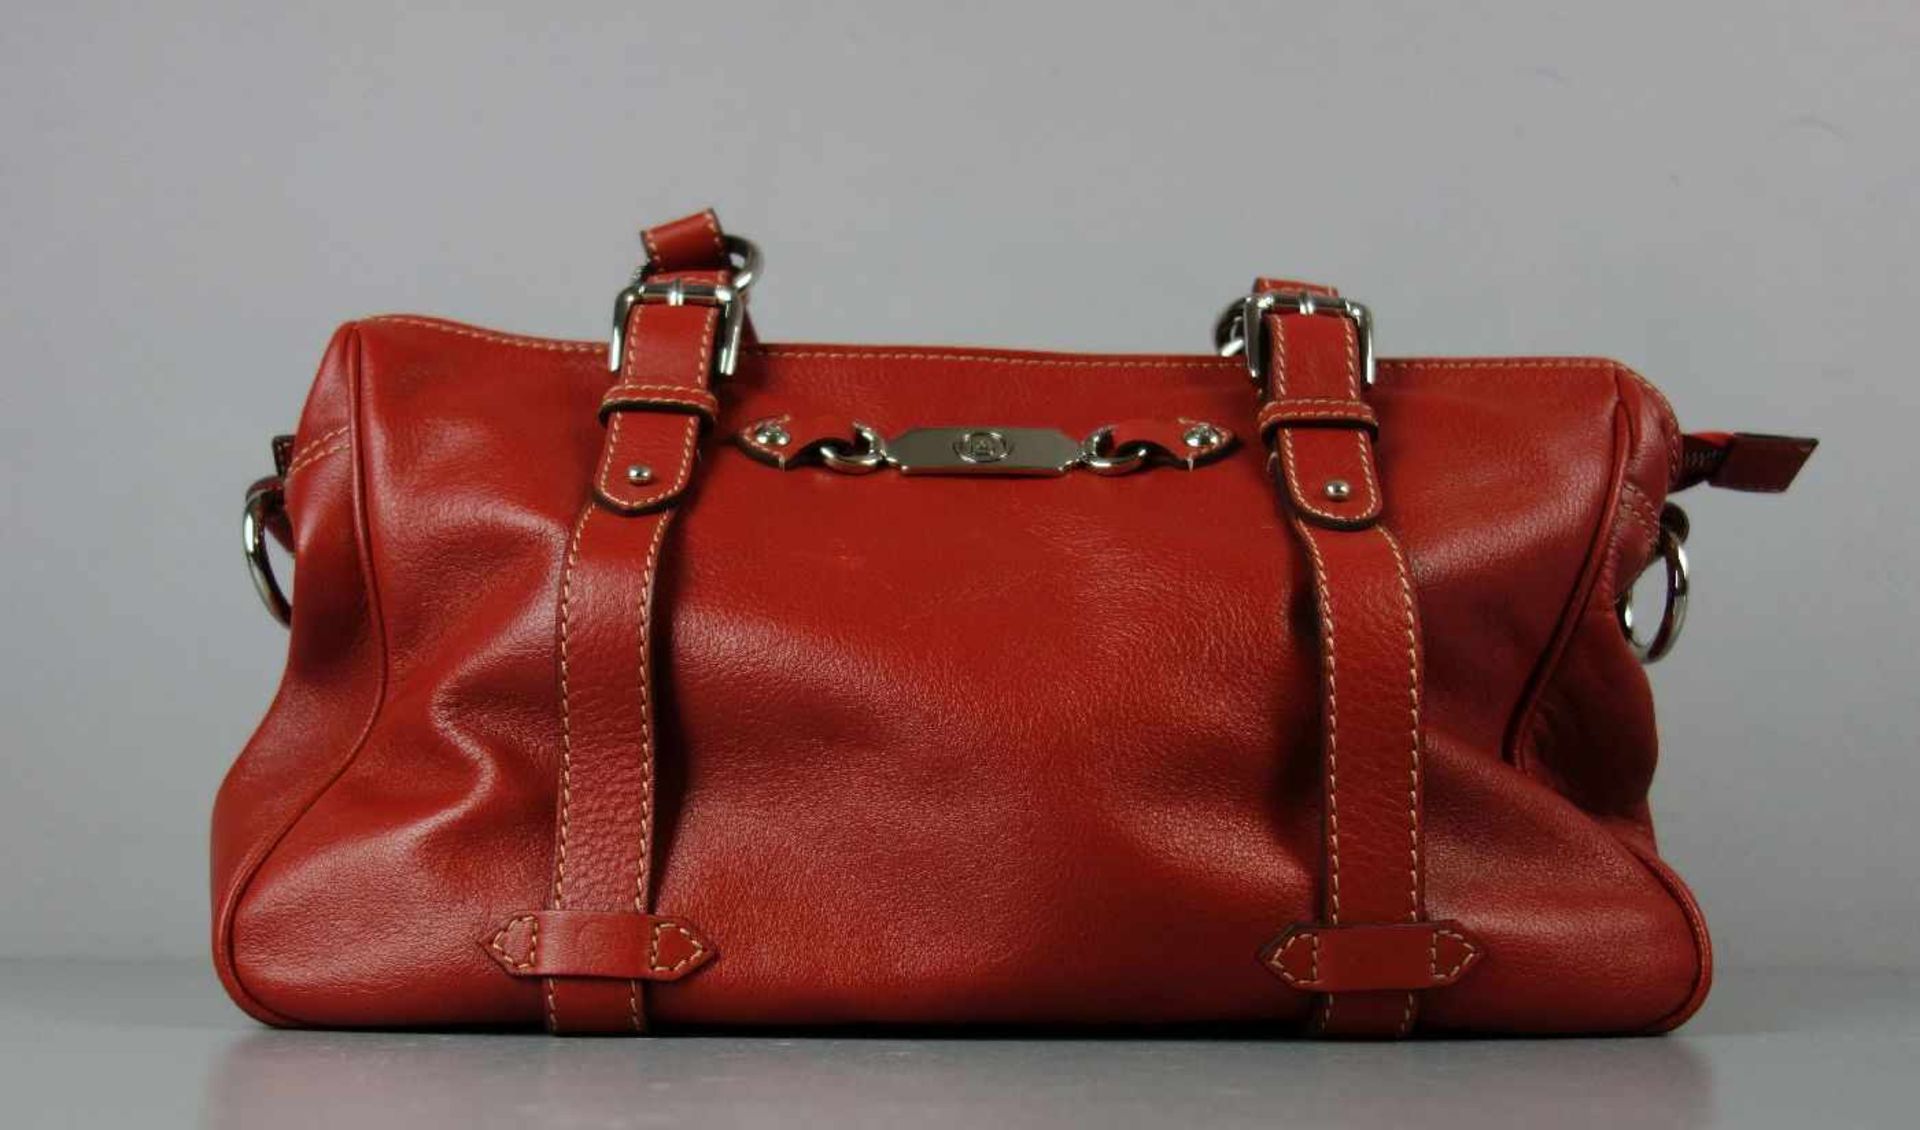 BOGNER HANDTASCHE, Vintage Tasche des 1932 in München gegründeten Modeunternehmens Willy Bogner GmbH - Bild 4 aus 6